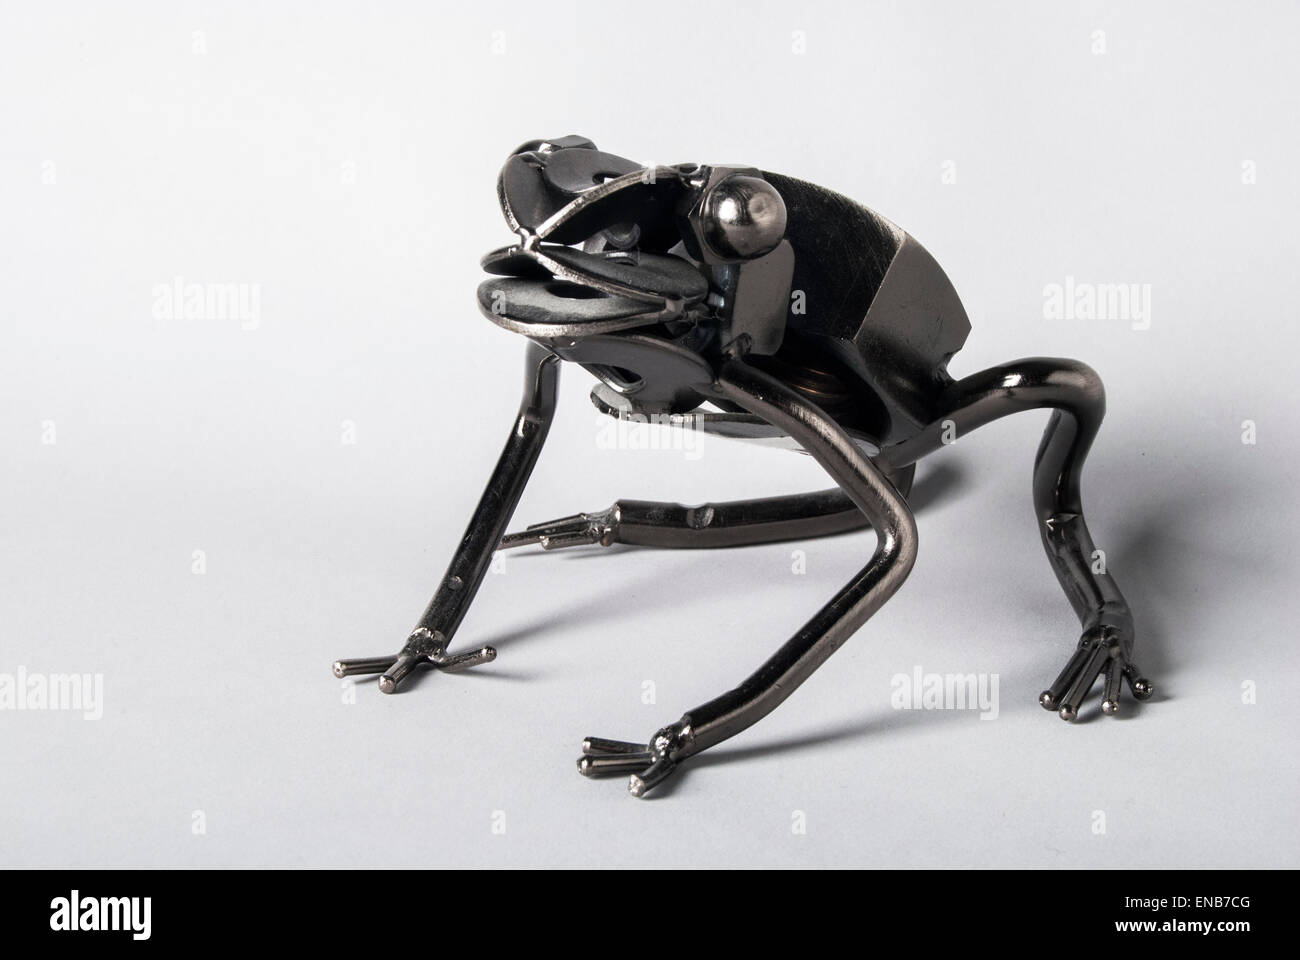 Studio lit, metal frog structure Stock Photo